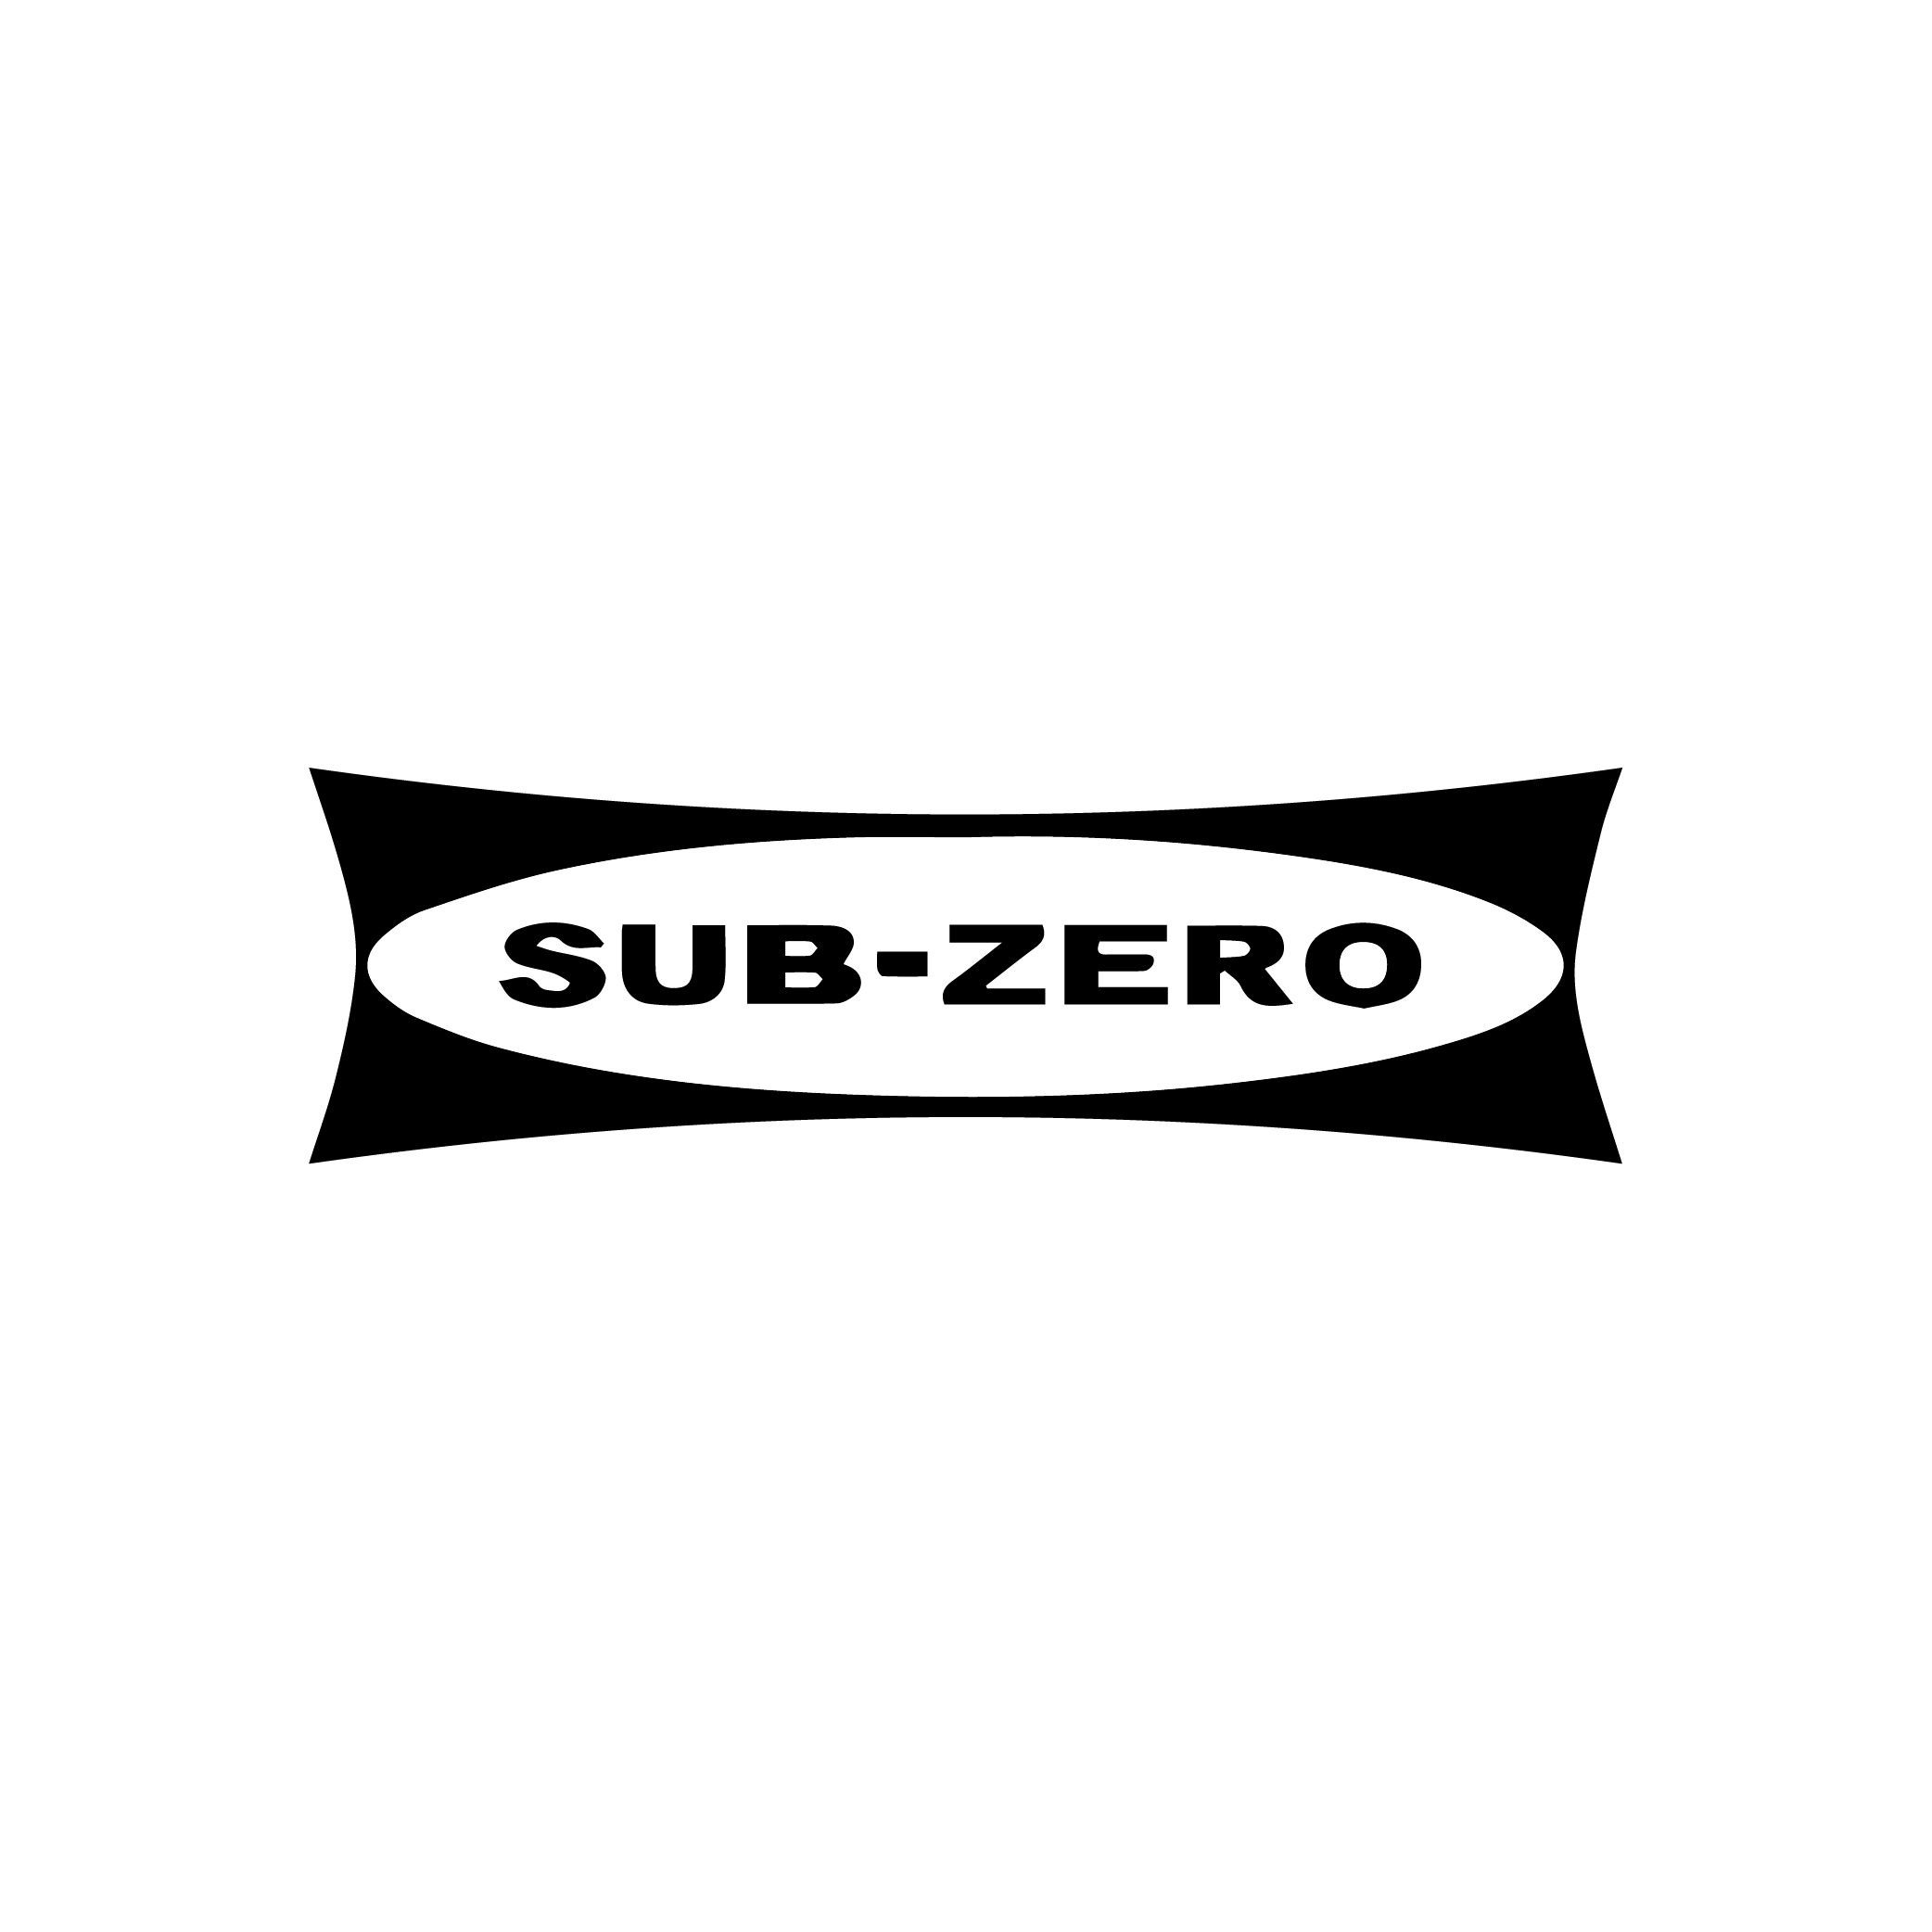  Subzero Wolf Appliances Logo 